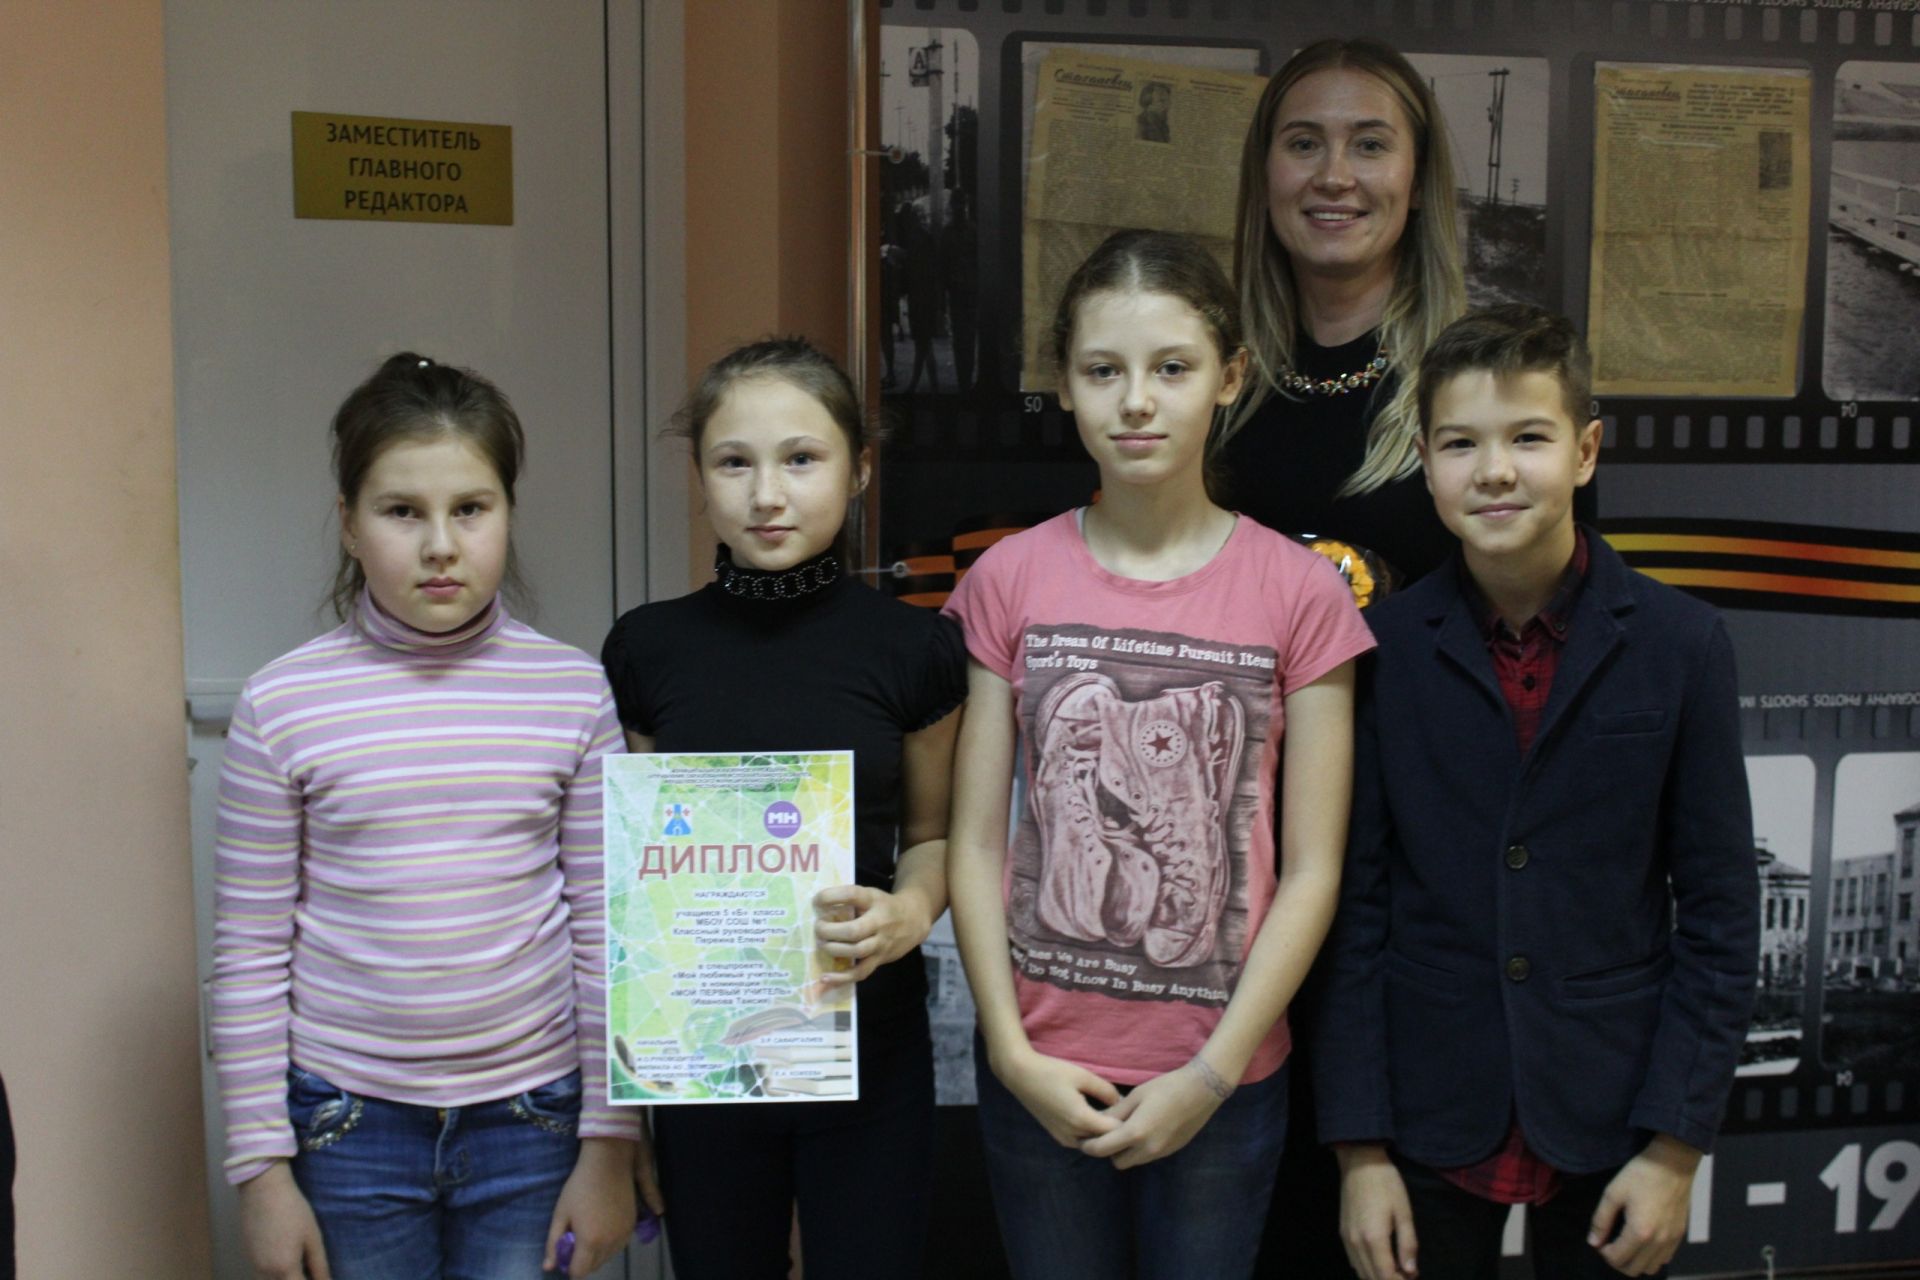 В редакции газеты "Менделеевские новости" наградили победителей спецпроекта "Мой любимый учитель"